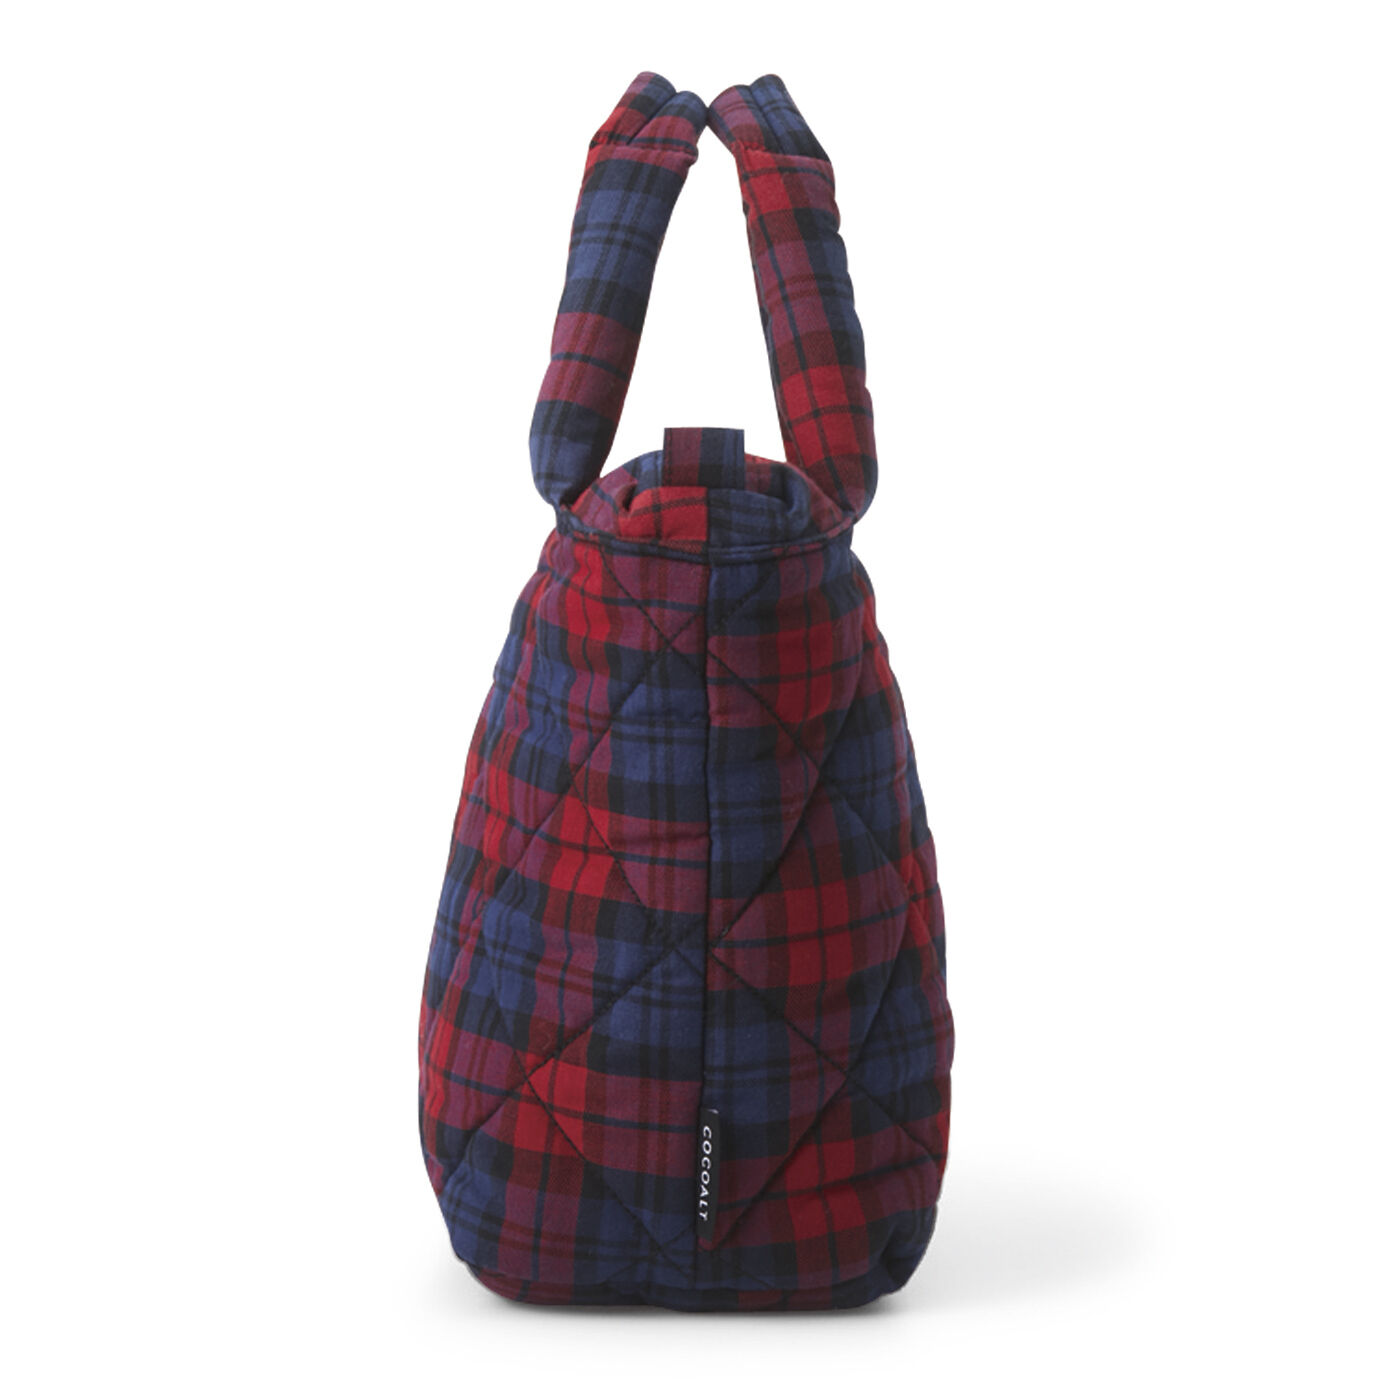 フェリシモの雑貨 Kraso|ふわふわで軽い赤紺チェックがポイントのバッグ|まち広で便利。